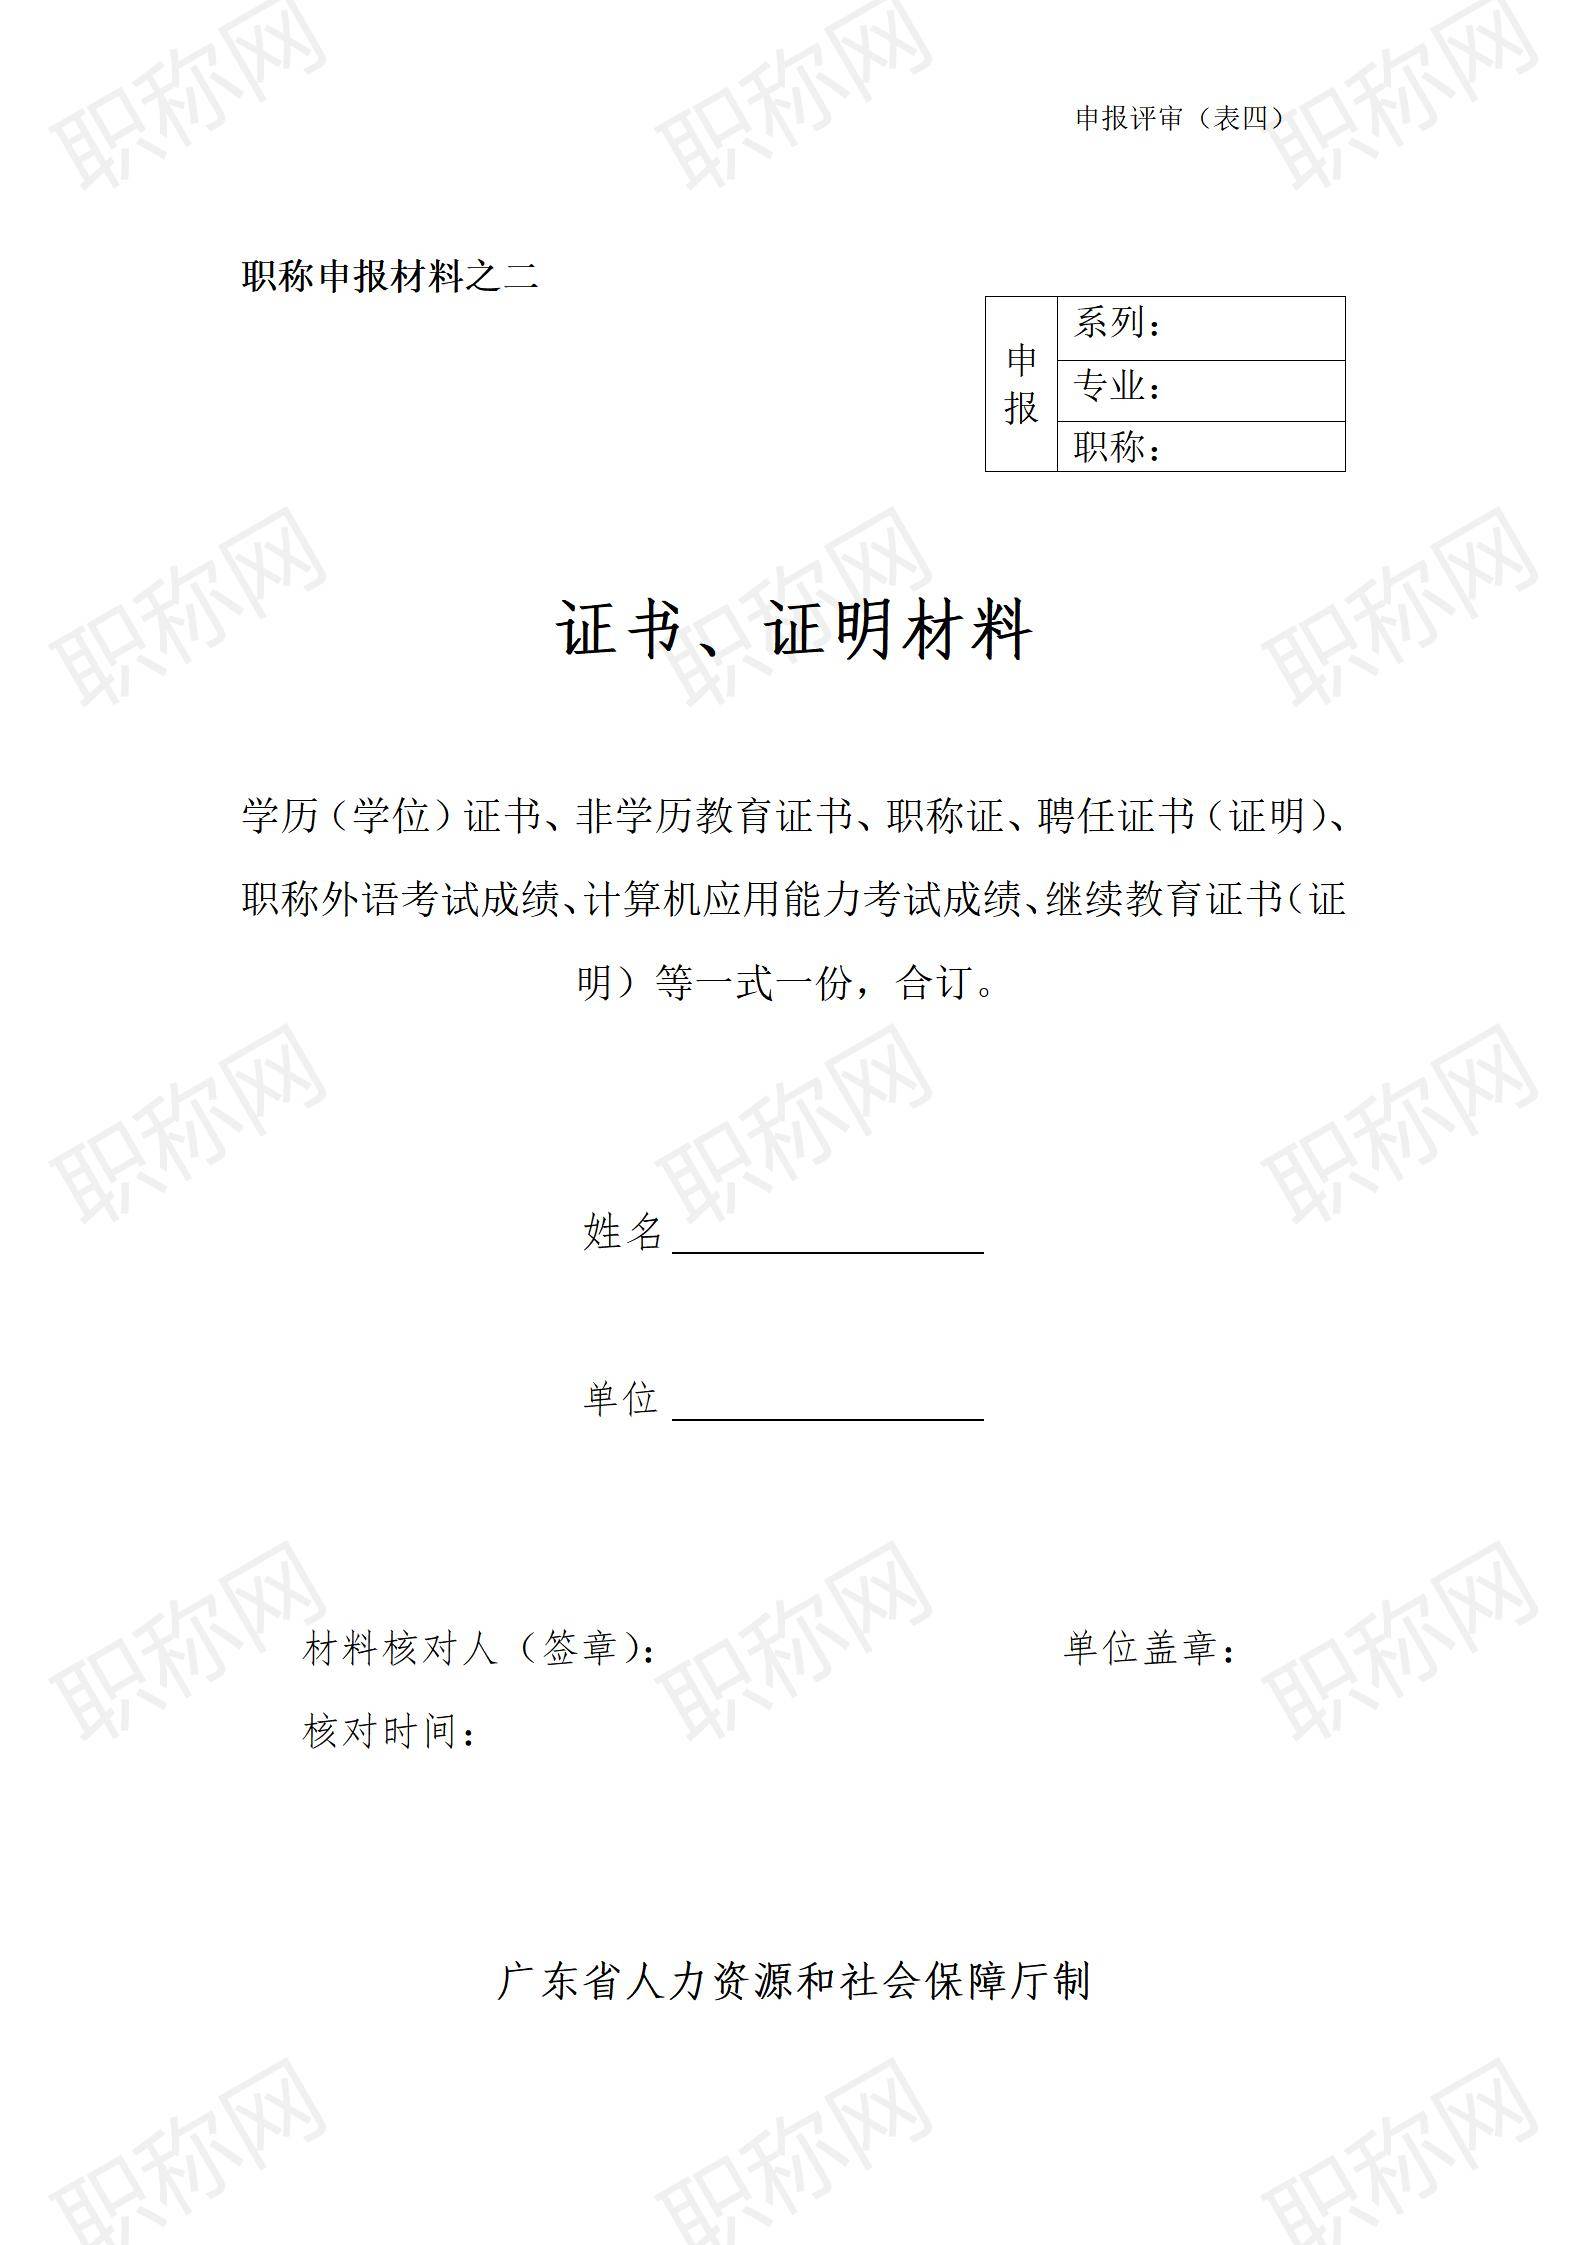 广东省职称评审证书及证明材料填写表_01.jpg